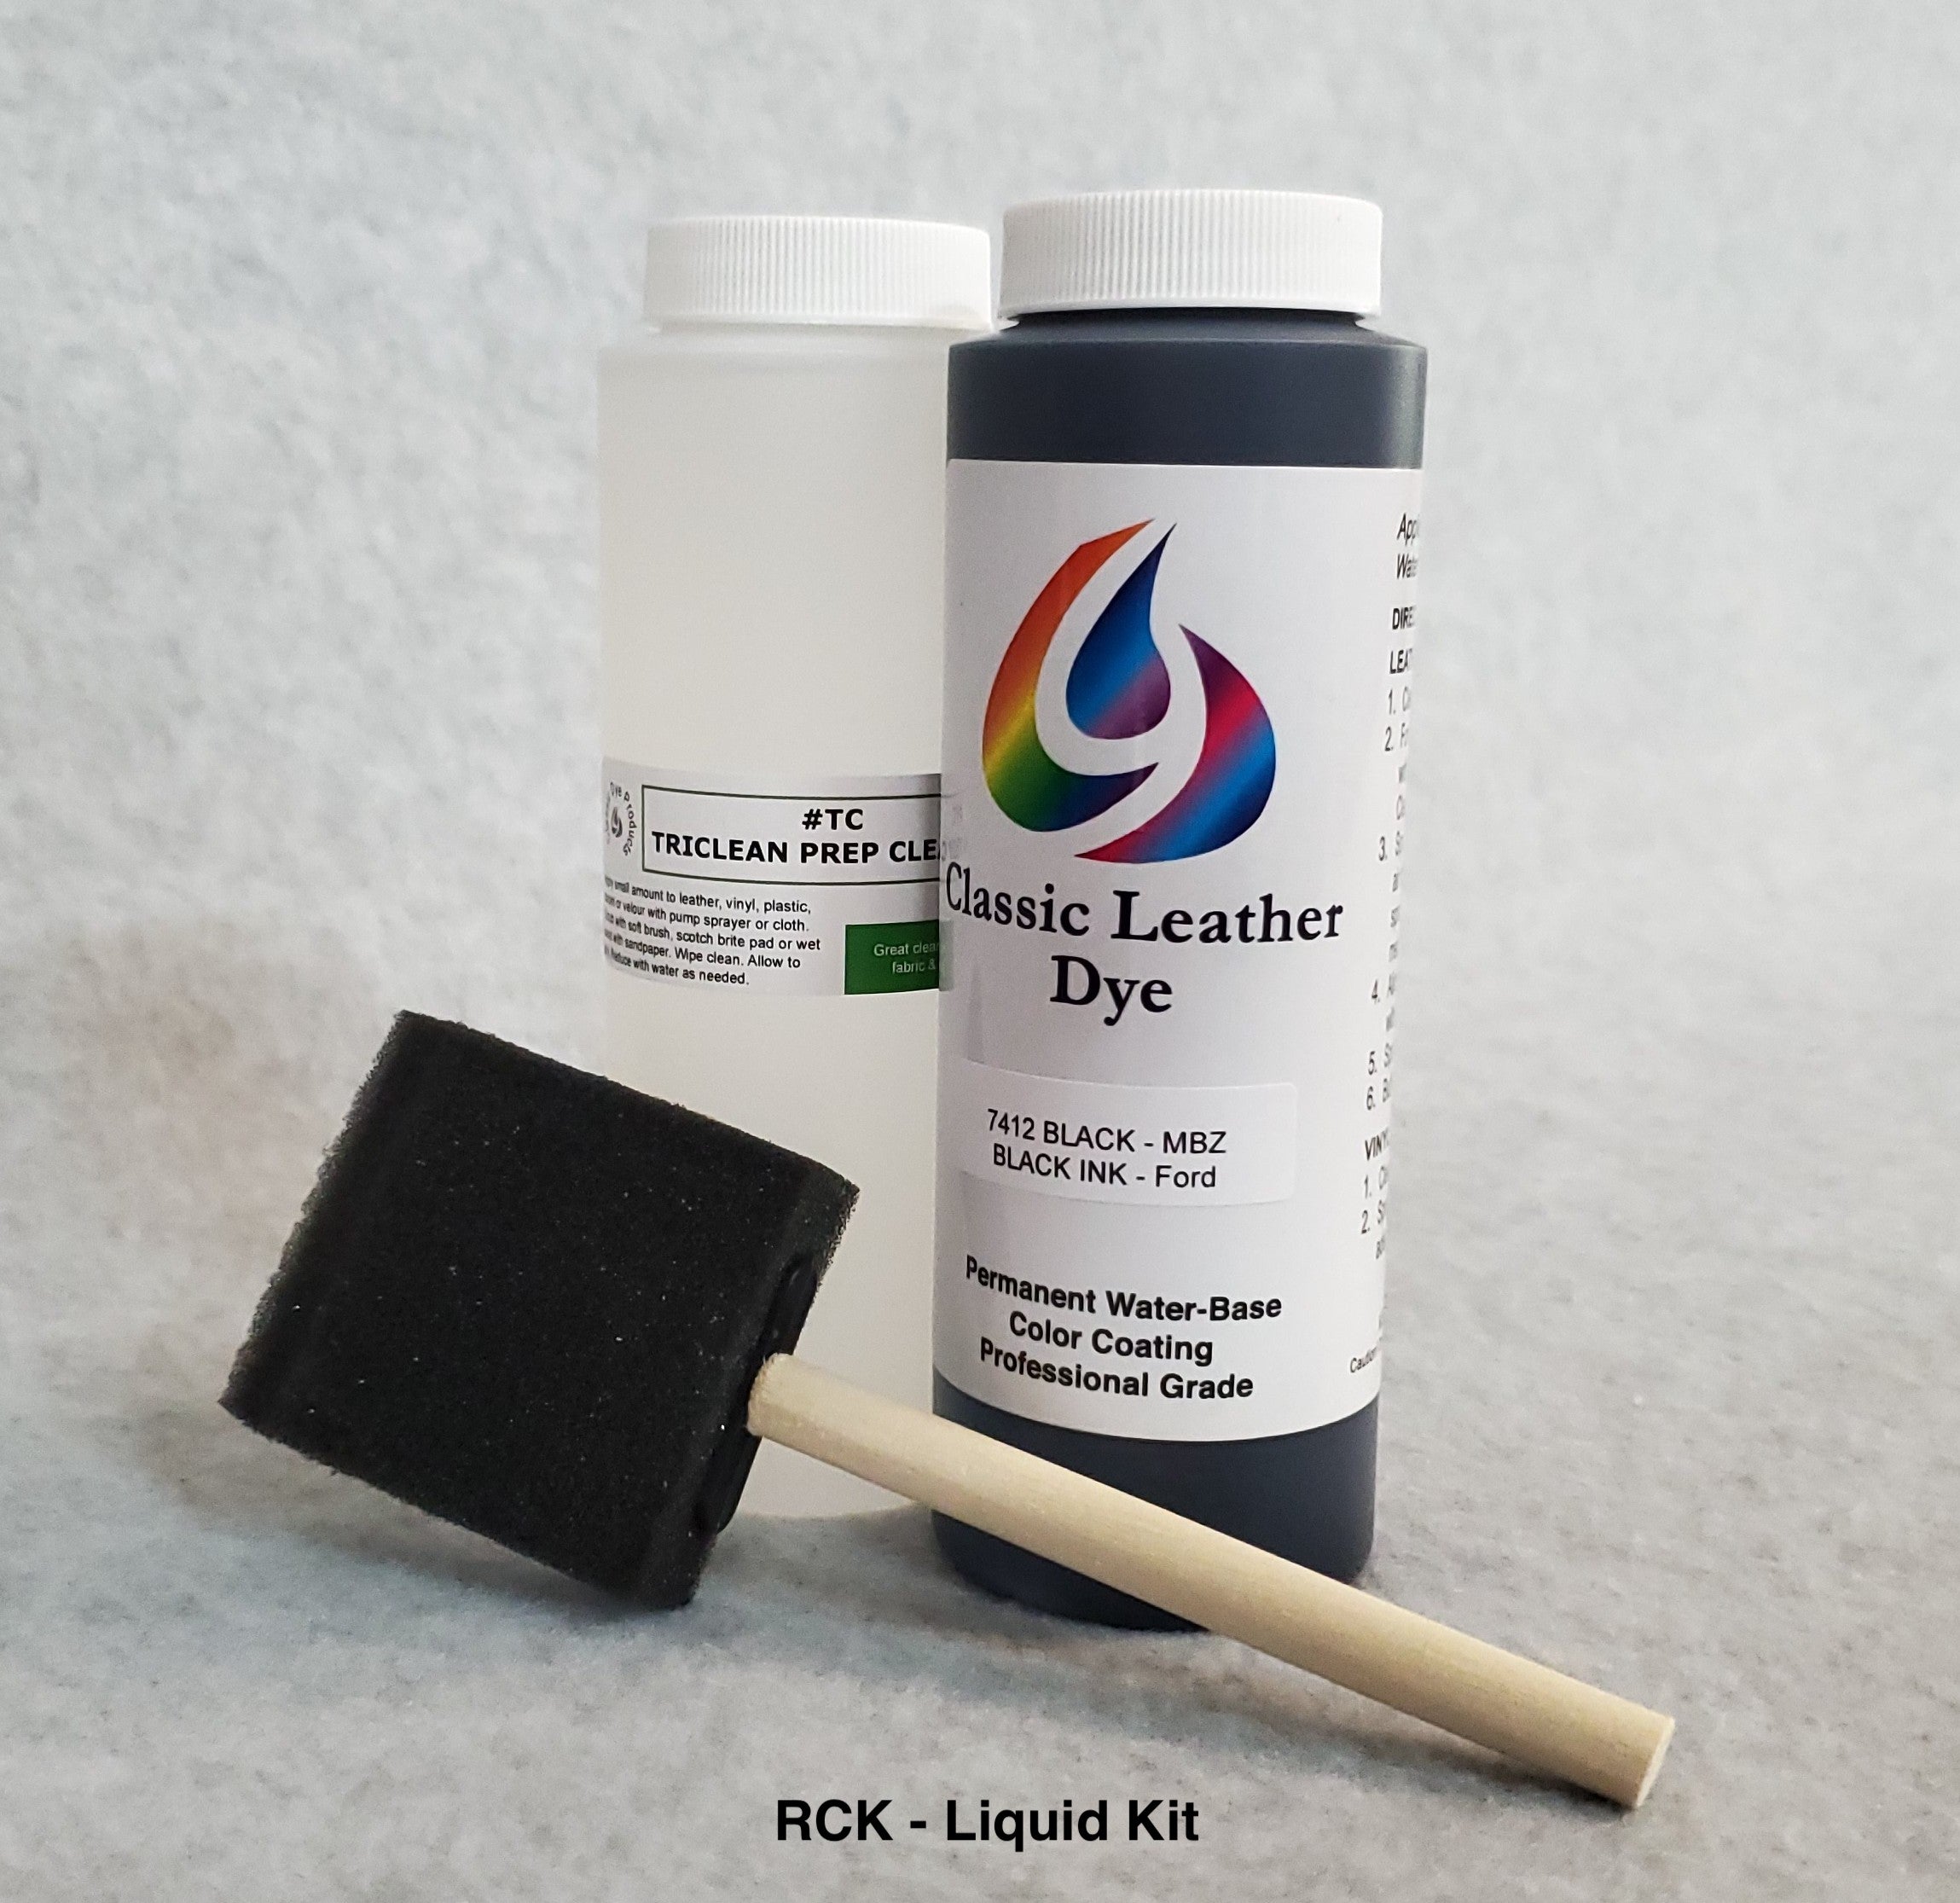 Shop Plaid Leather Studio™ Leather & Vinyl Paint Colors - White, 2 oz. -  71411 - 71411